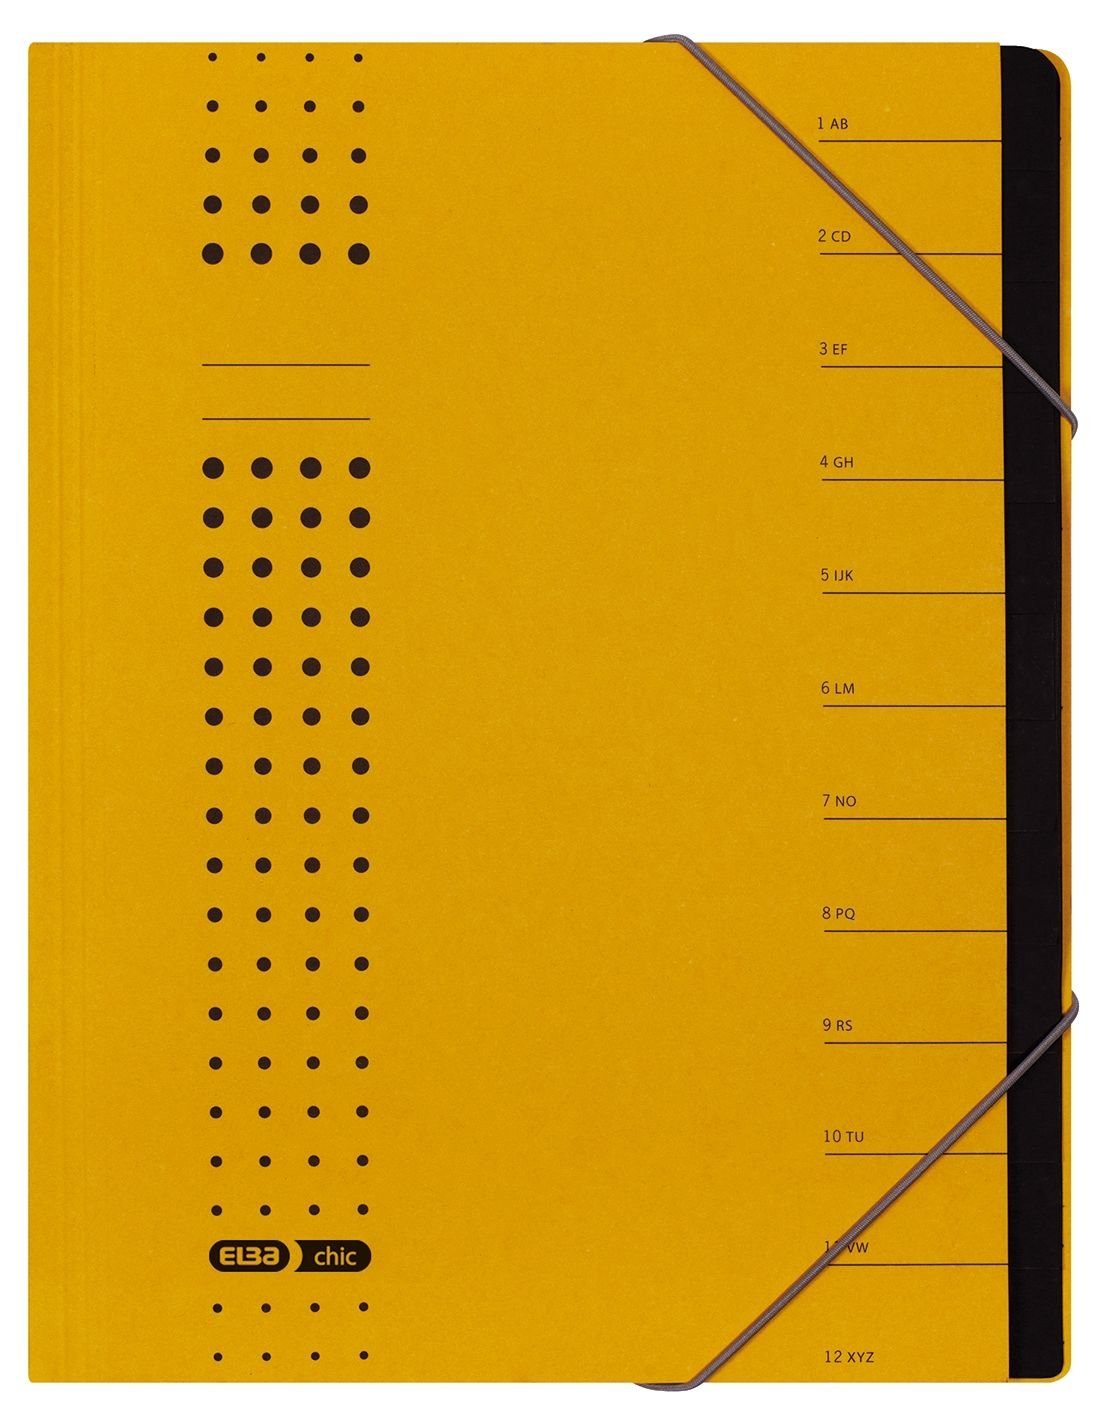 ELBA Schreibmappe ELBA chic-Ordnungsmappe, A4 gelb, Fächer 1-12, Karton